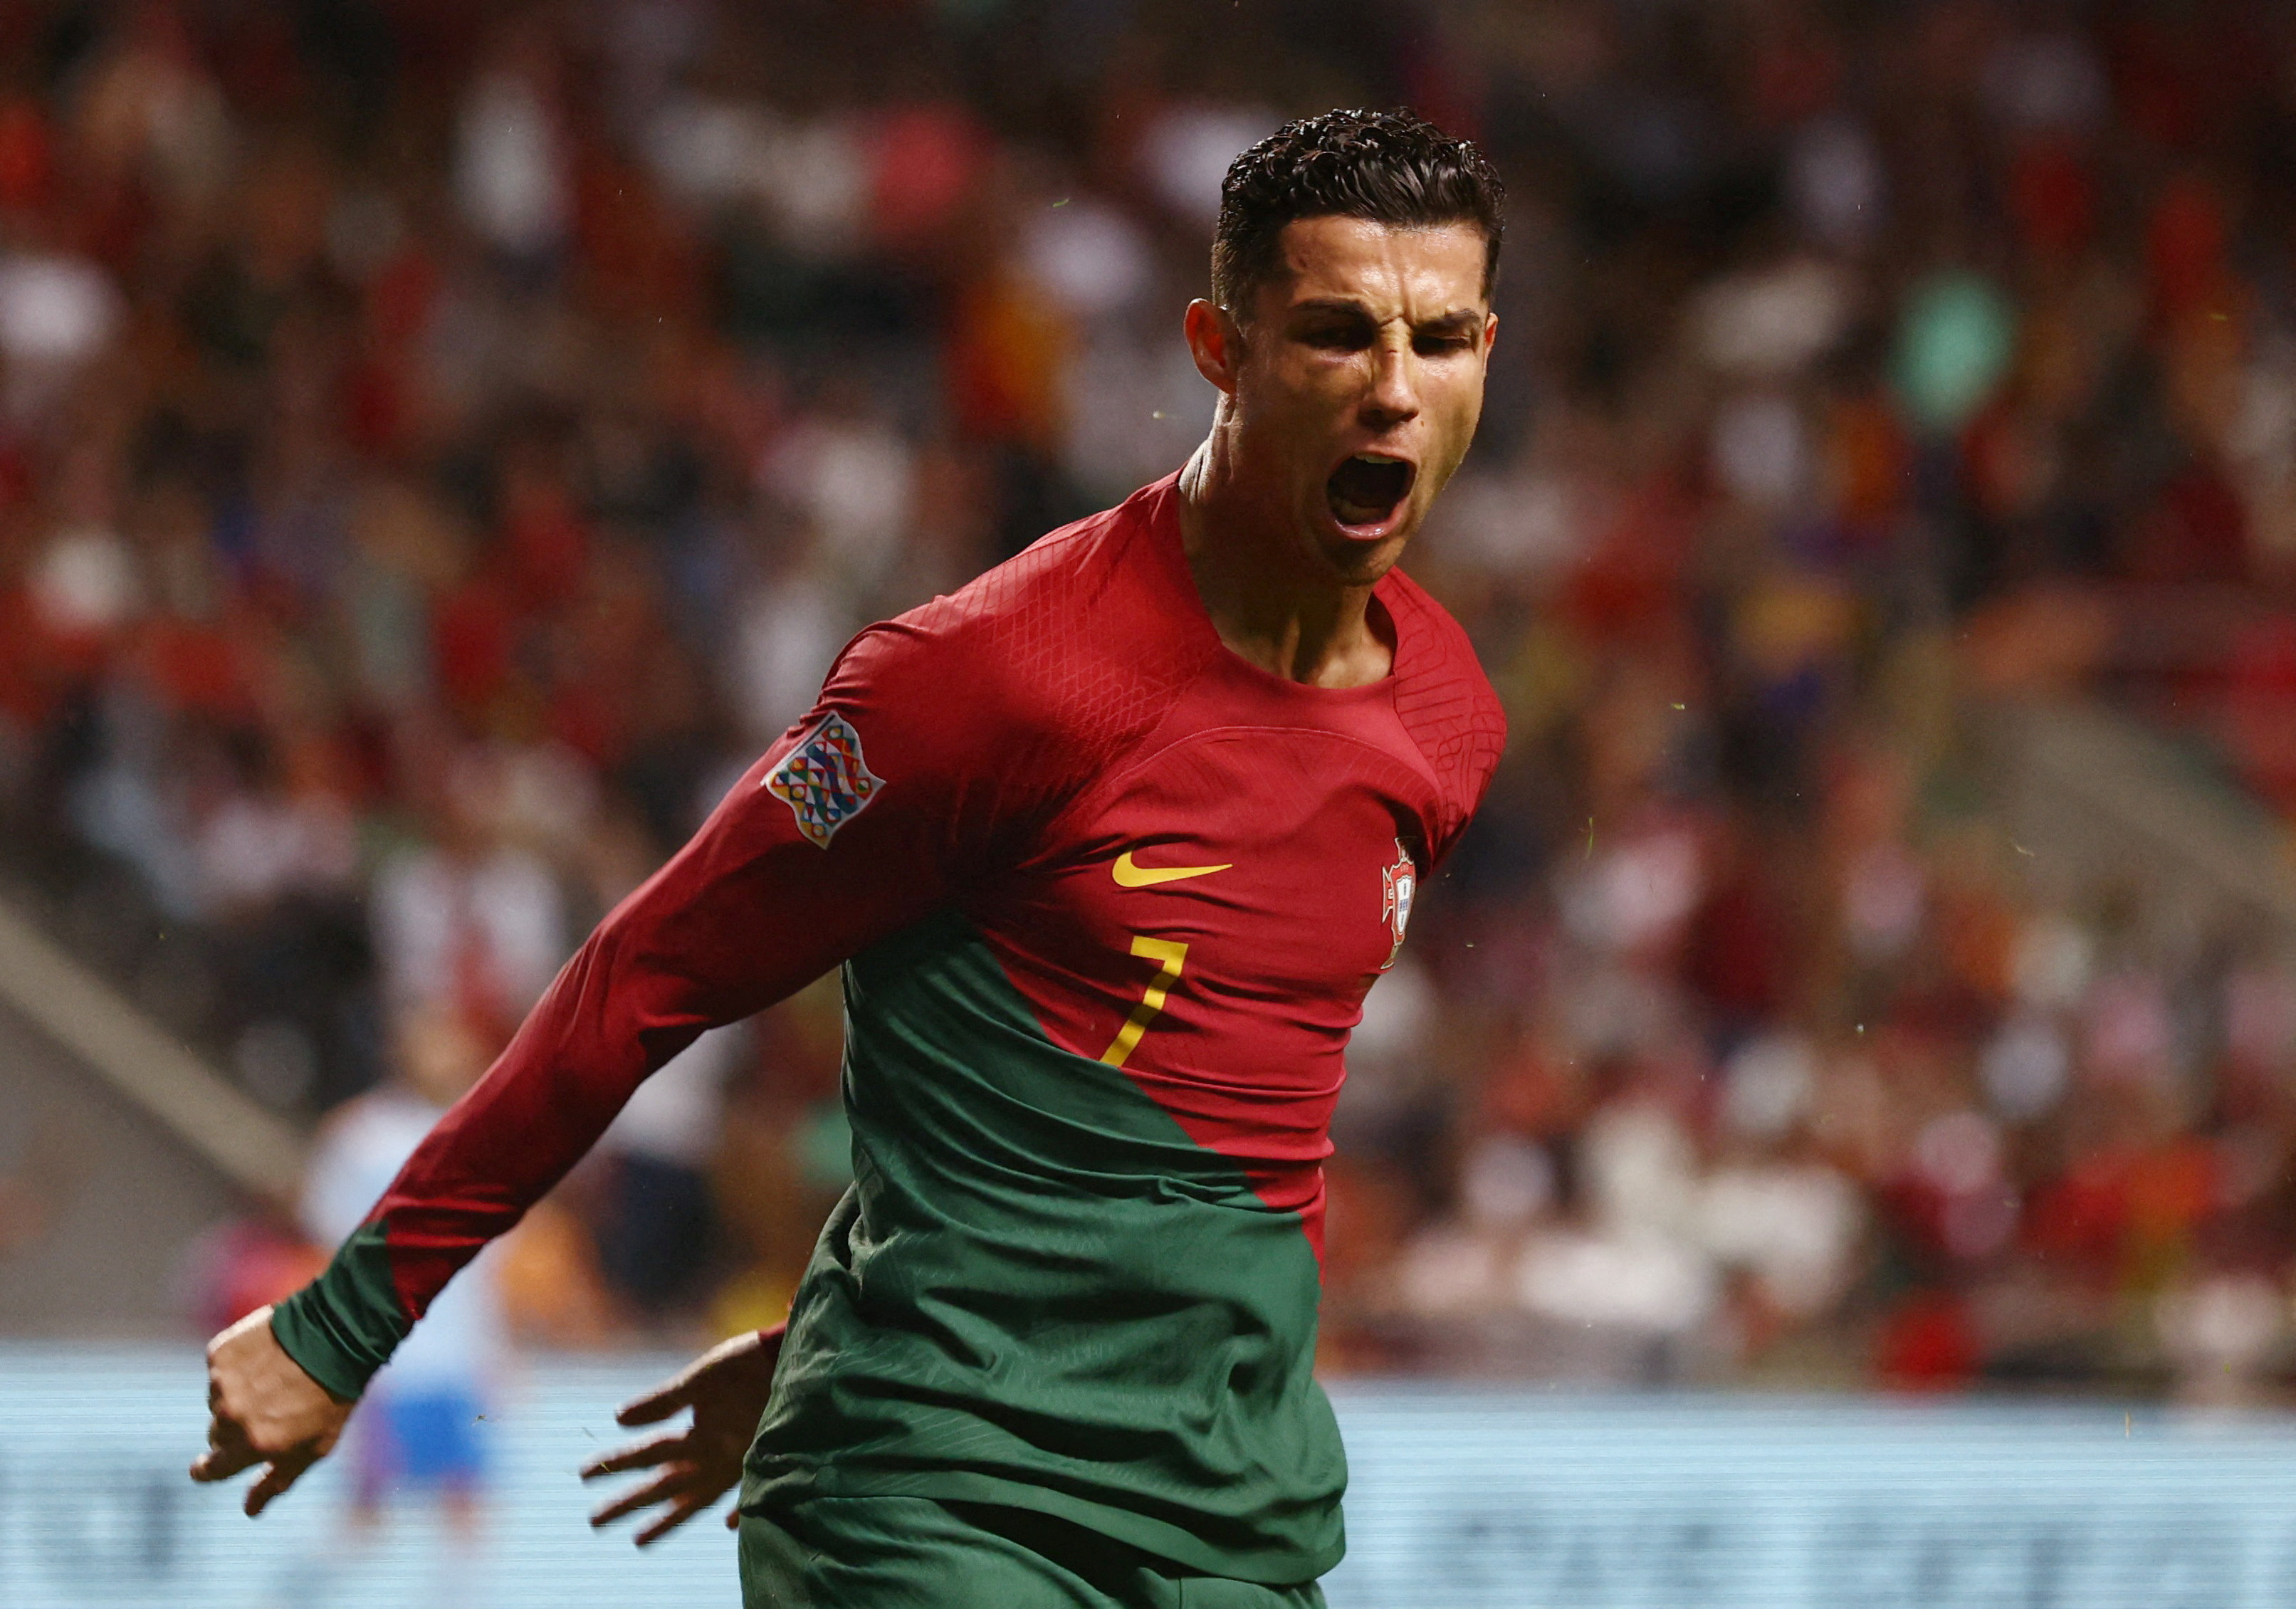 Xem hình ảnh Ronaldo vô địch World Cup cùng đội tuyển Bồ Đào Nha sẽ làm bạn cảm thấy hạnh phúc và tự hào cho anh ta và đội bóng quốc gia của mình. Đây là một trong những kỷ lục không thể nào quên của lịch sử bóng đá thế giới.